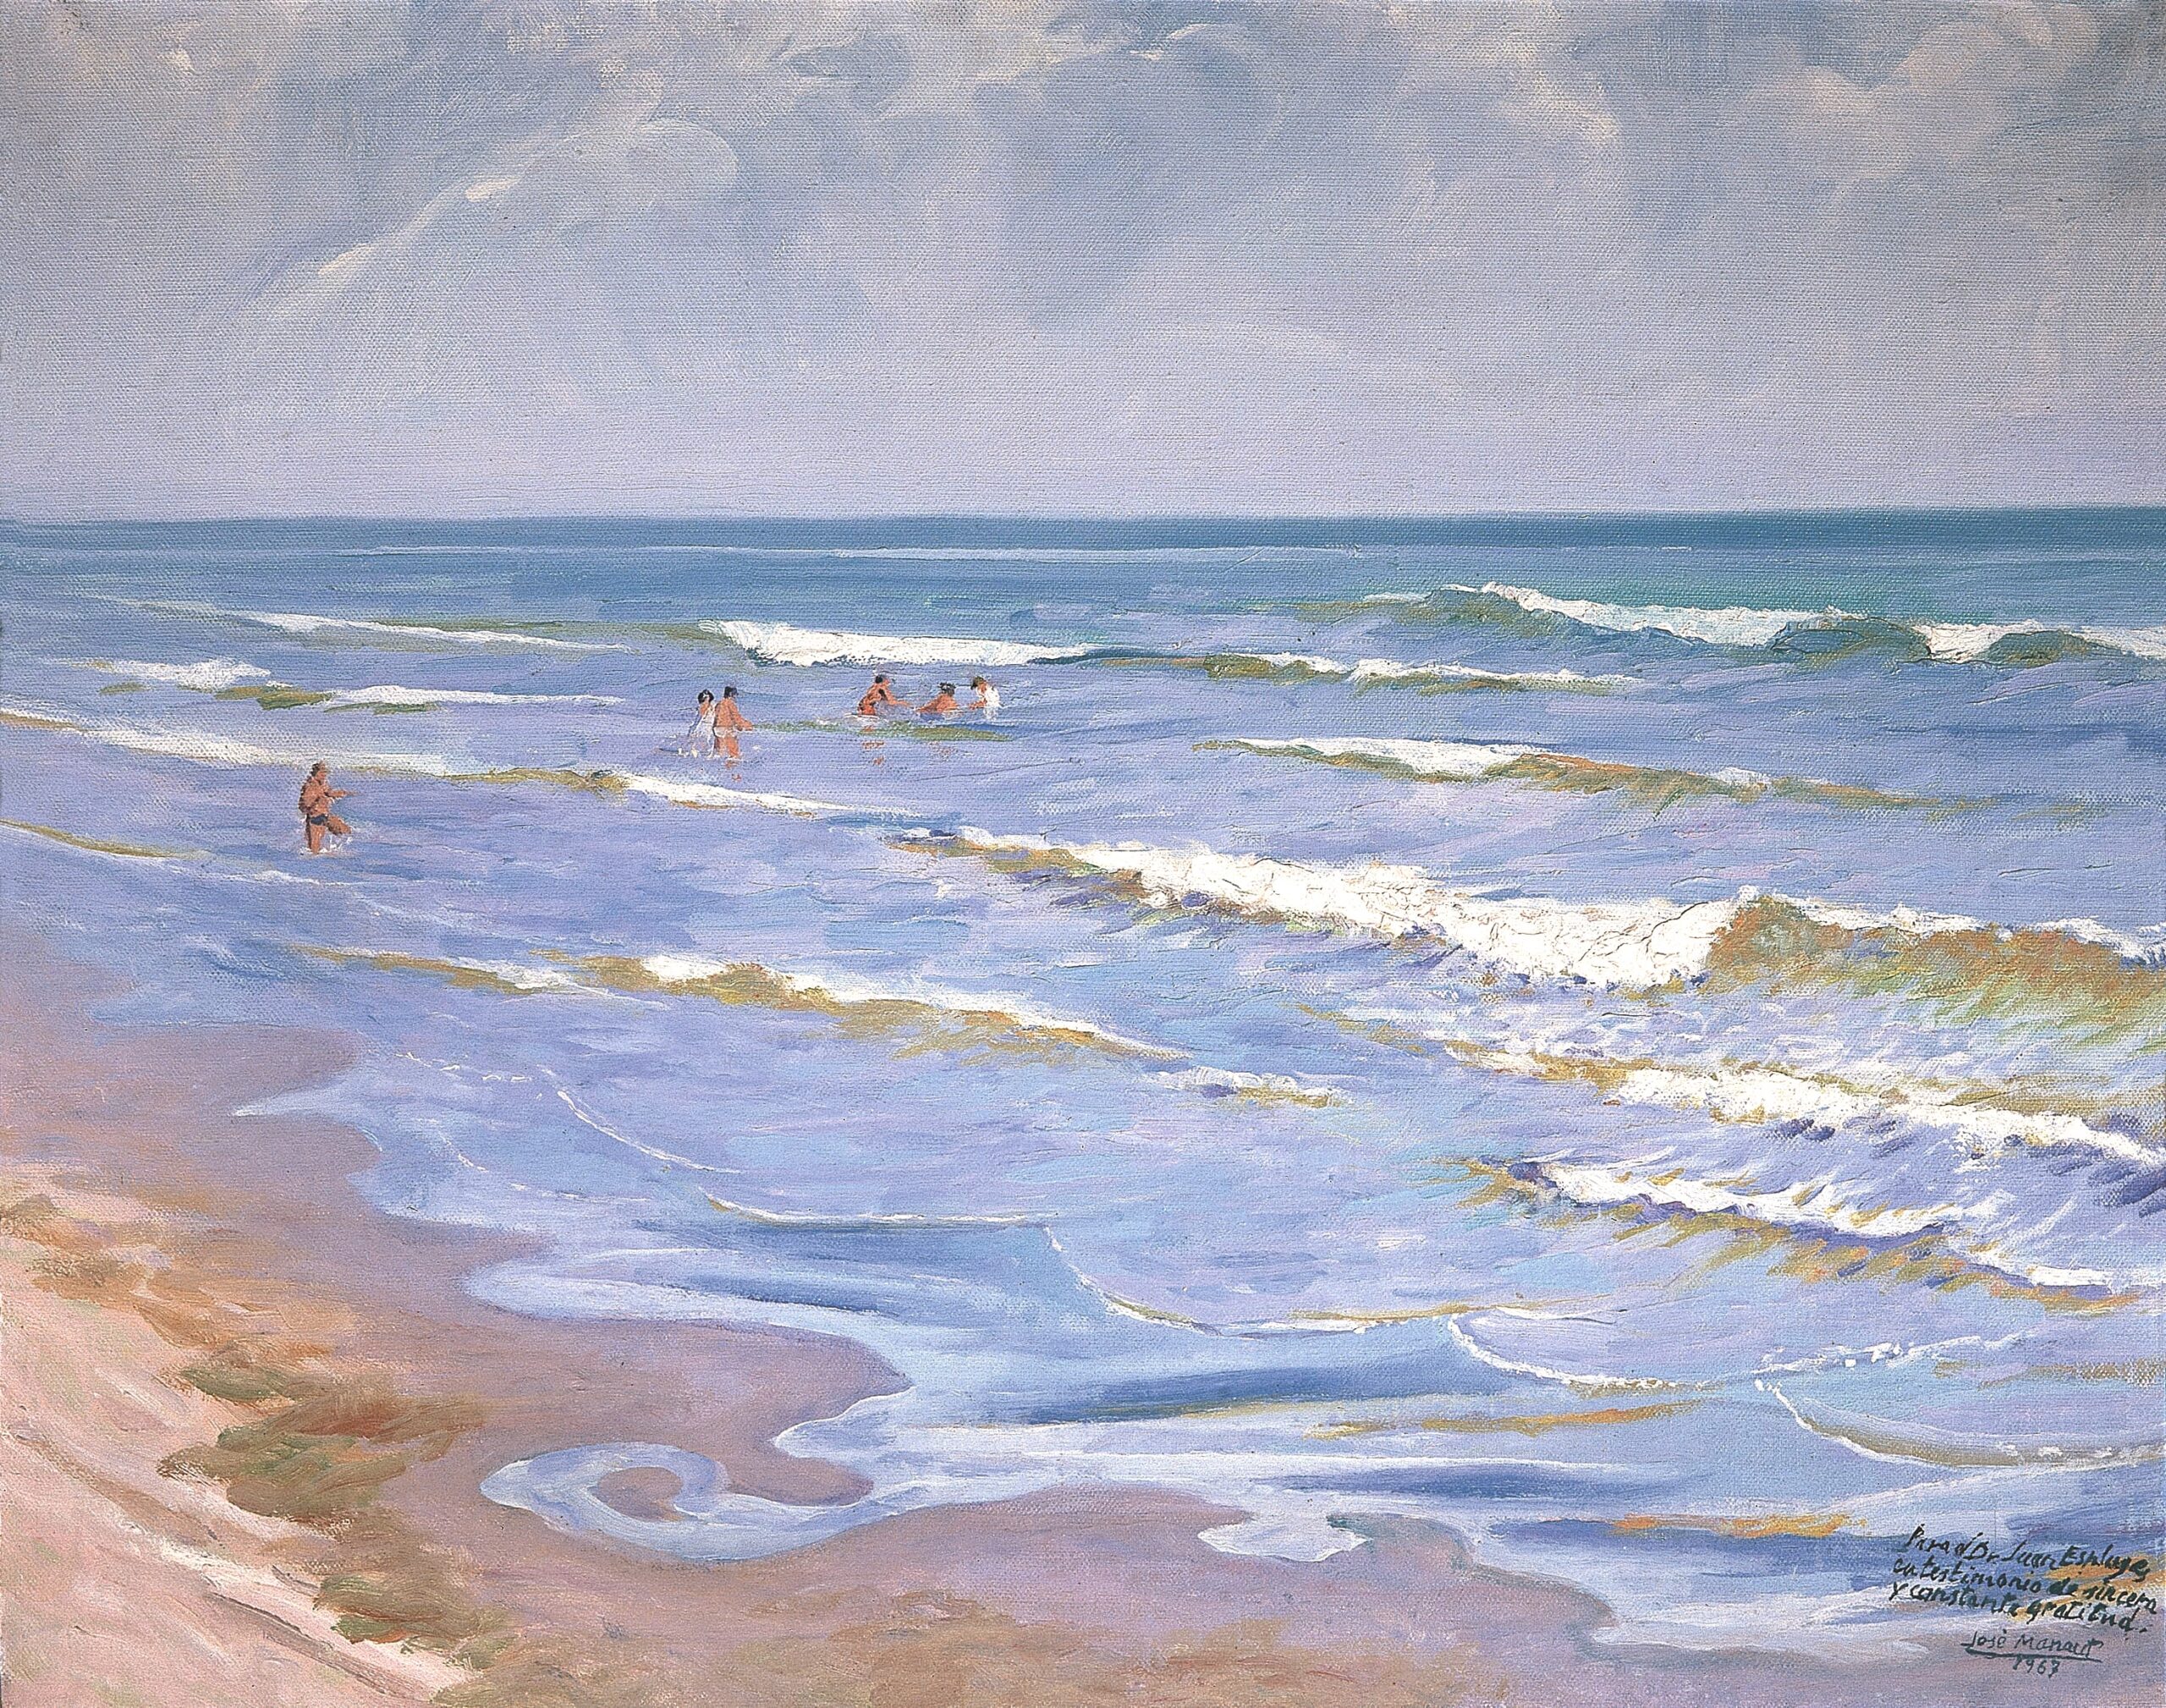 Pintura de José Manaut titulada Playa de la Malvarrosa (Para el Dr. Juan Esplugues, con testimonio de sincera y constante gratitud), 1947. Óleo sobre lienzo.